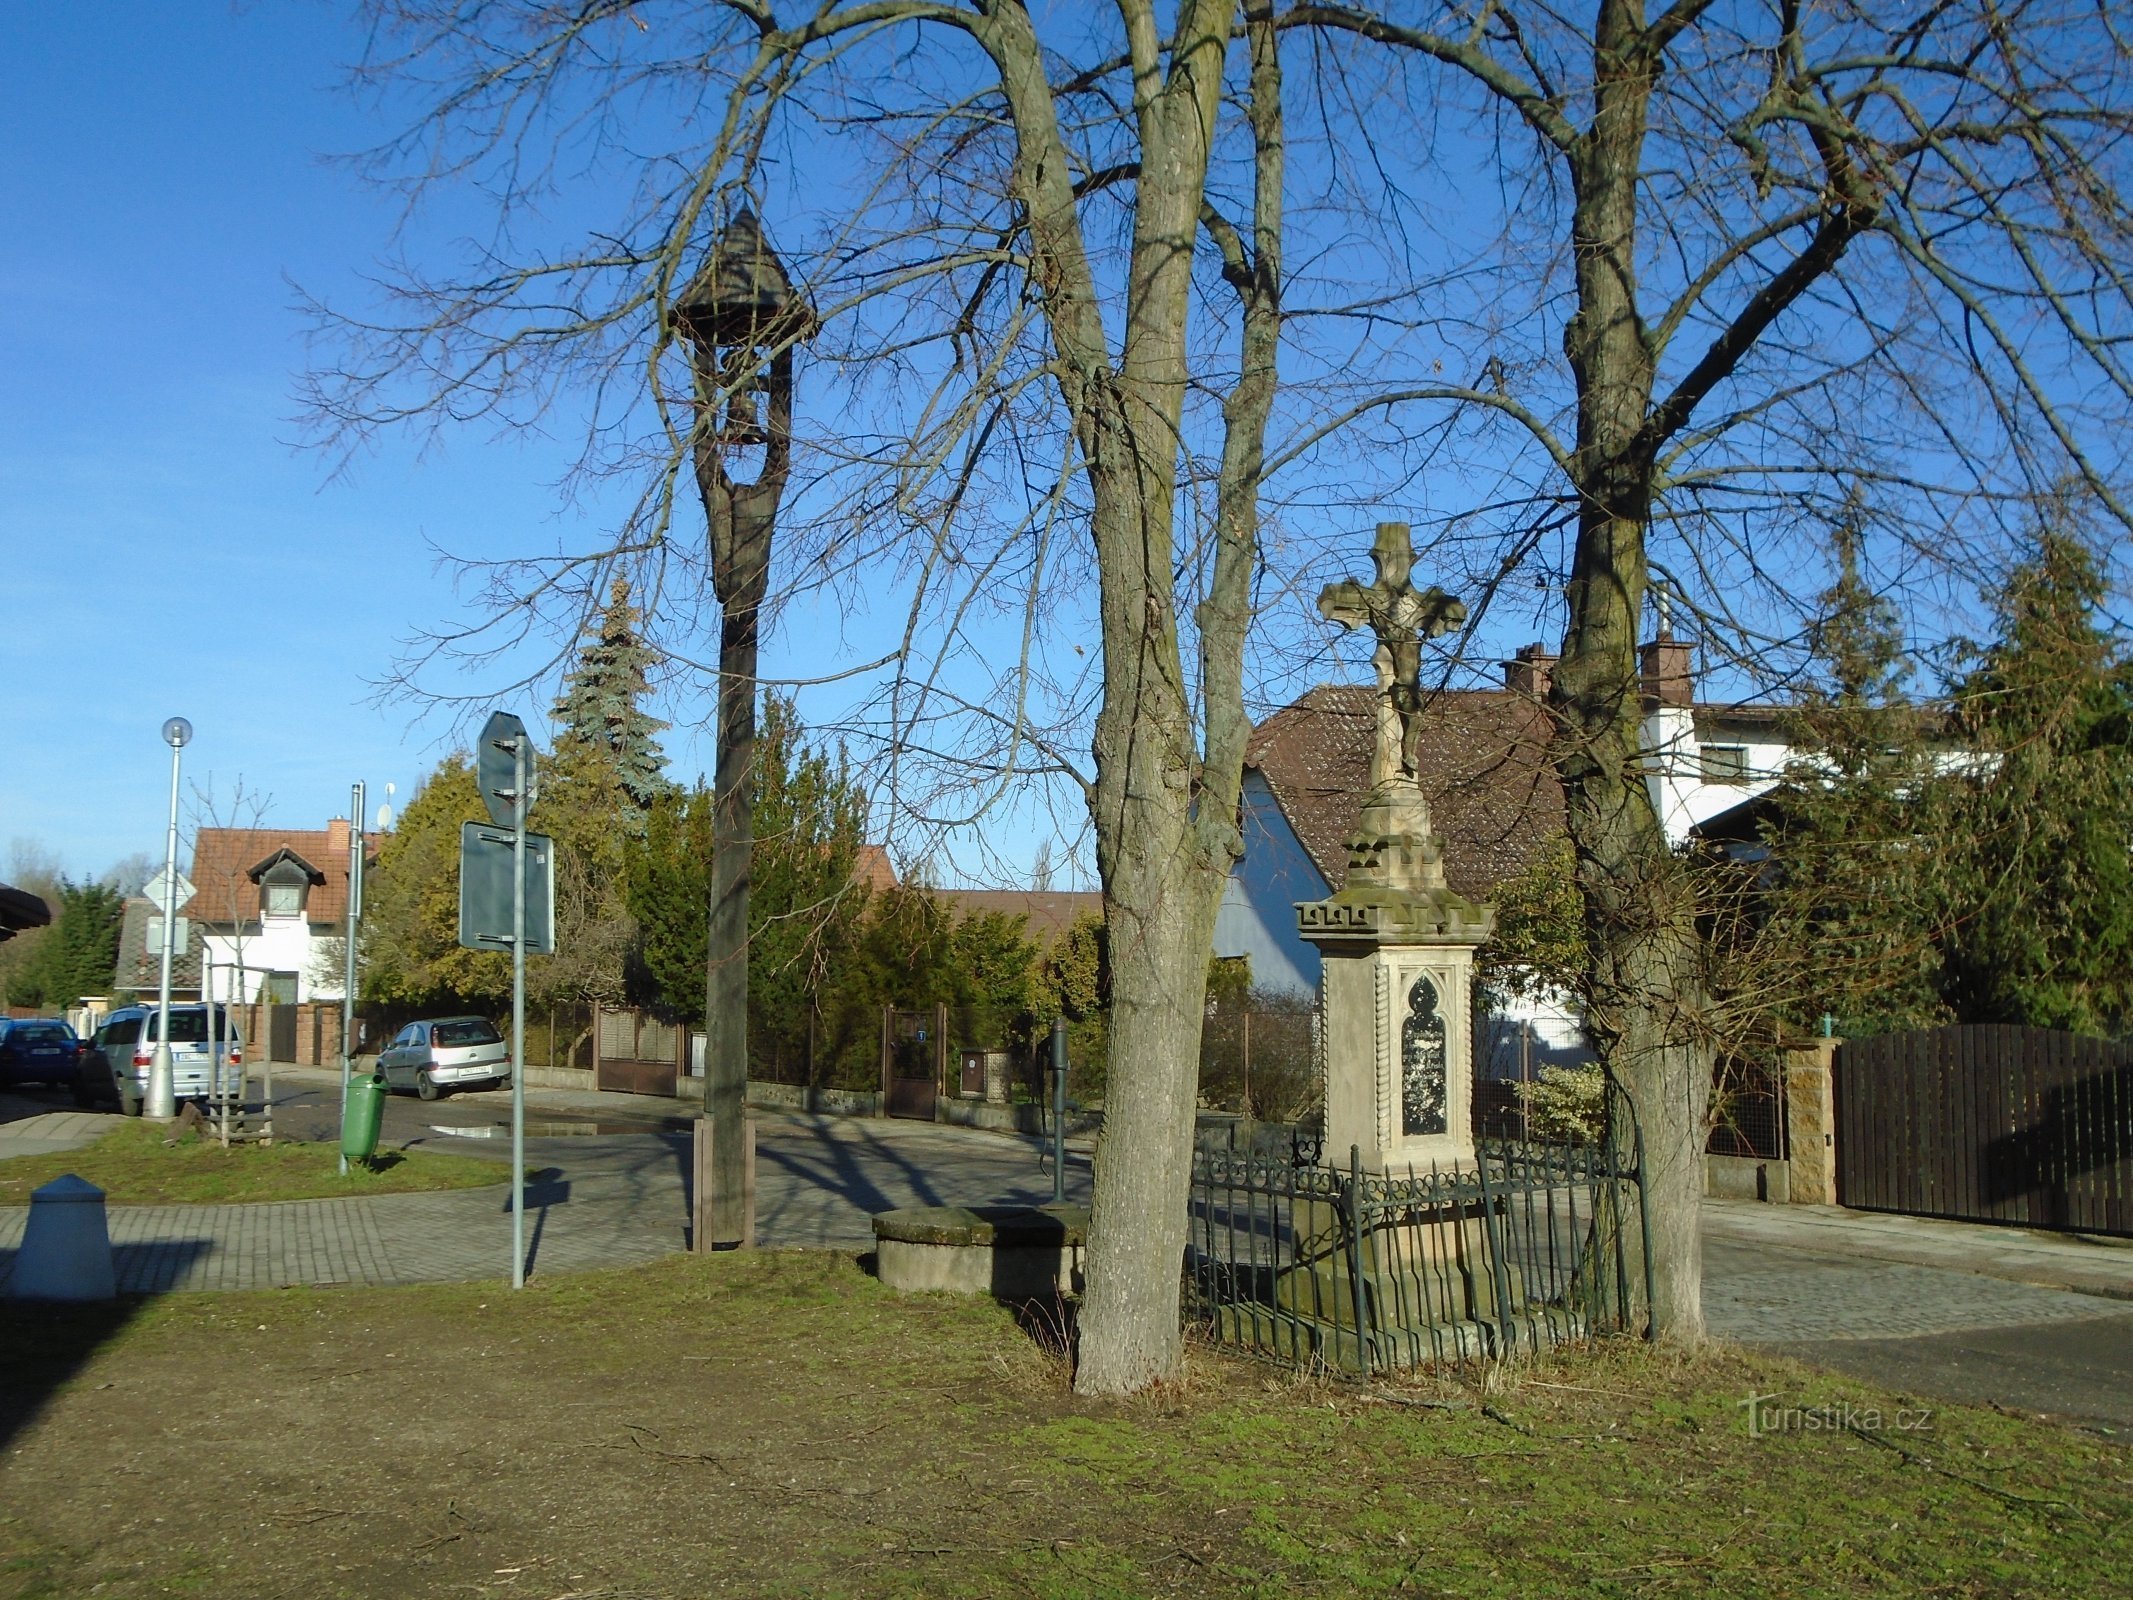 Dzwonnica i krzyż na ulicy Machkovej (Třebeš)